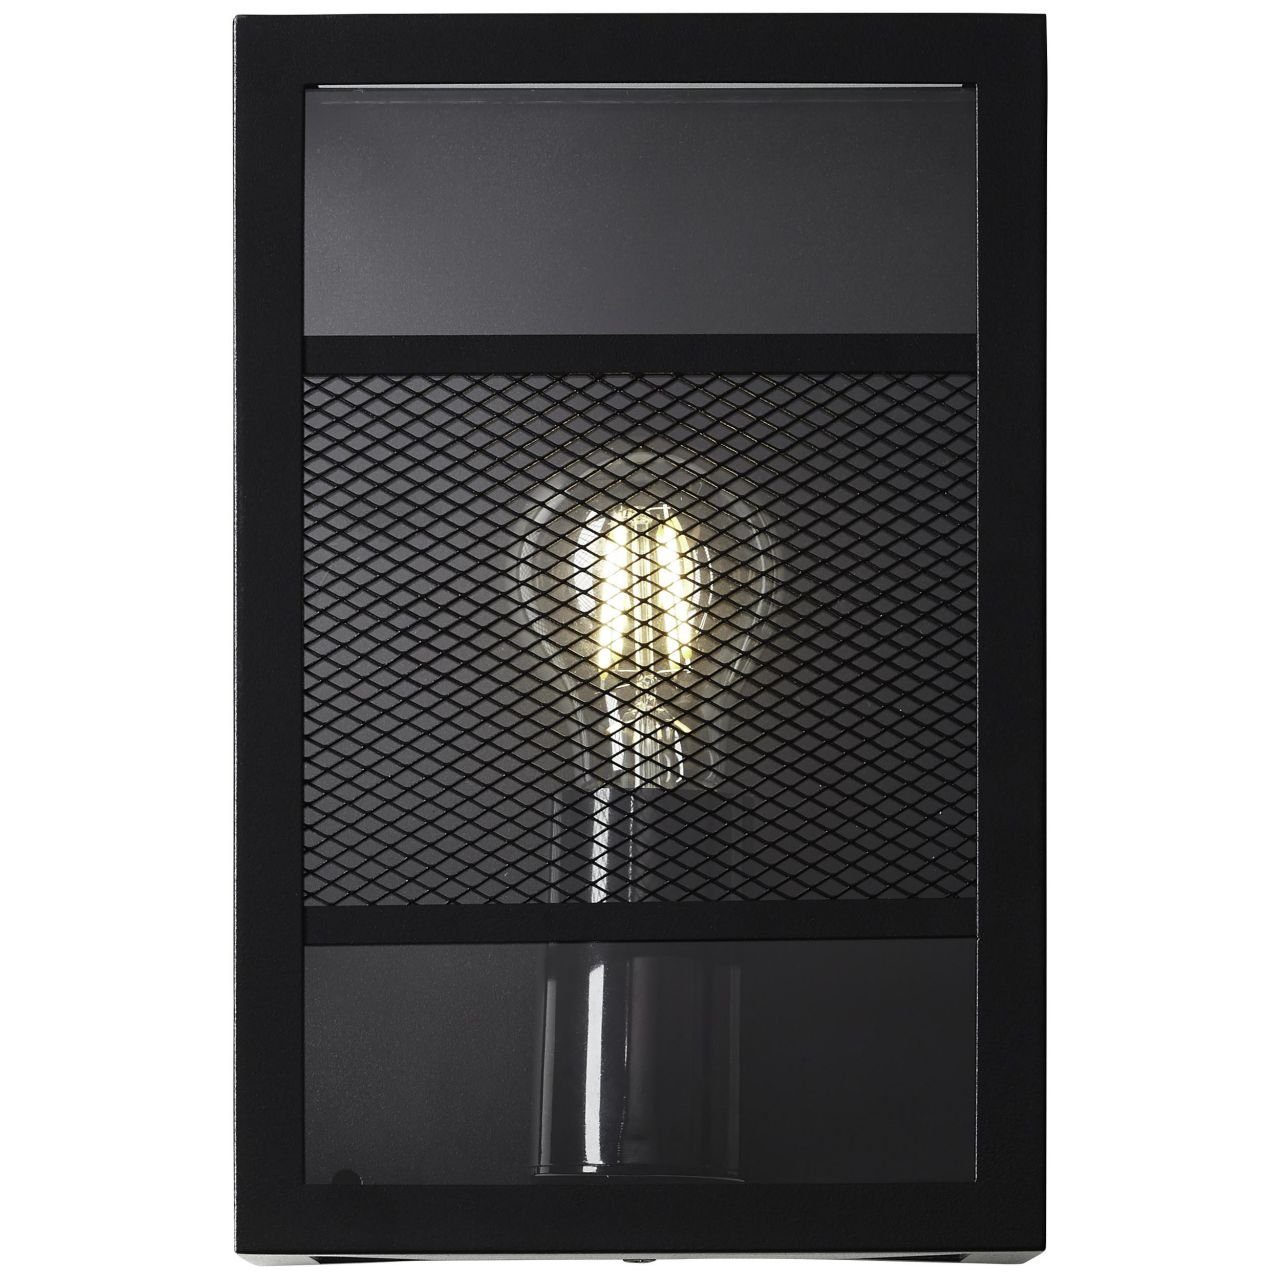 Metall/Kunststoff, Außenwandleuchte LED Getta schwarz, E27 A60, Brilliant Getta, Außen-Wandleuchte 1x Lampe,